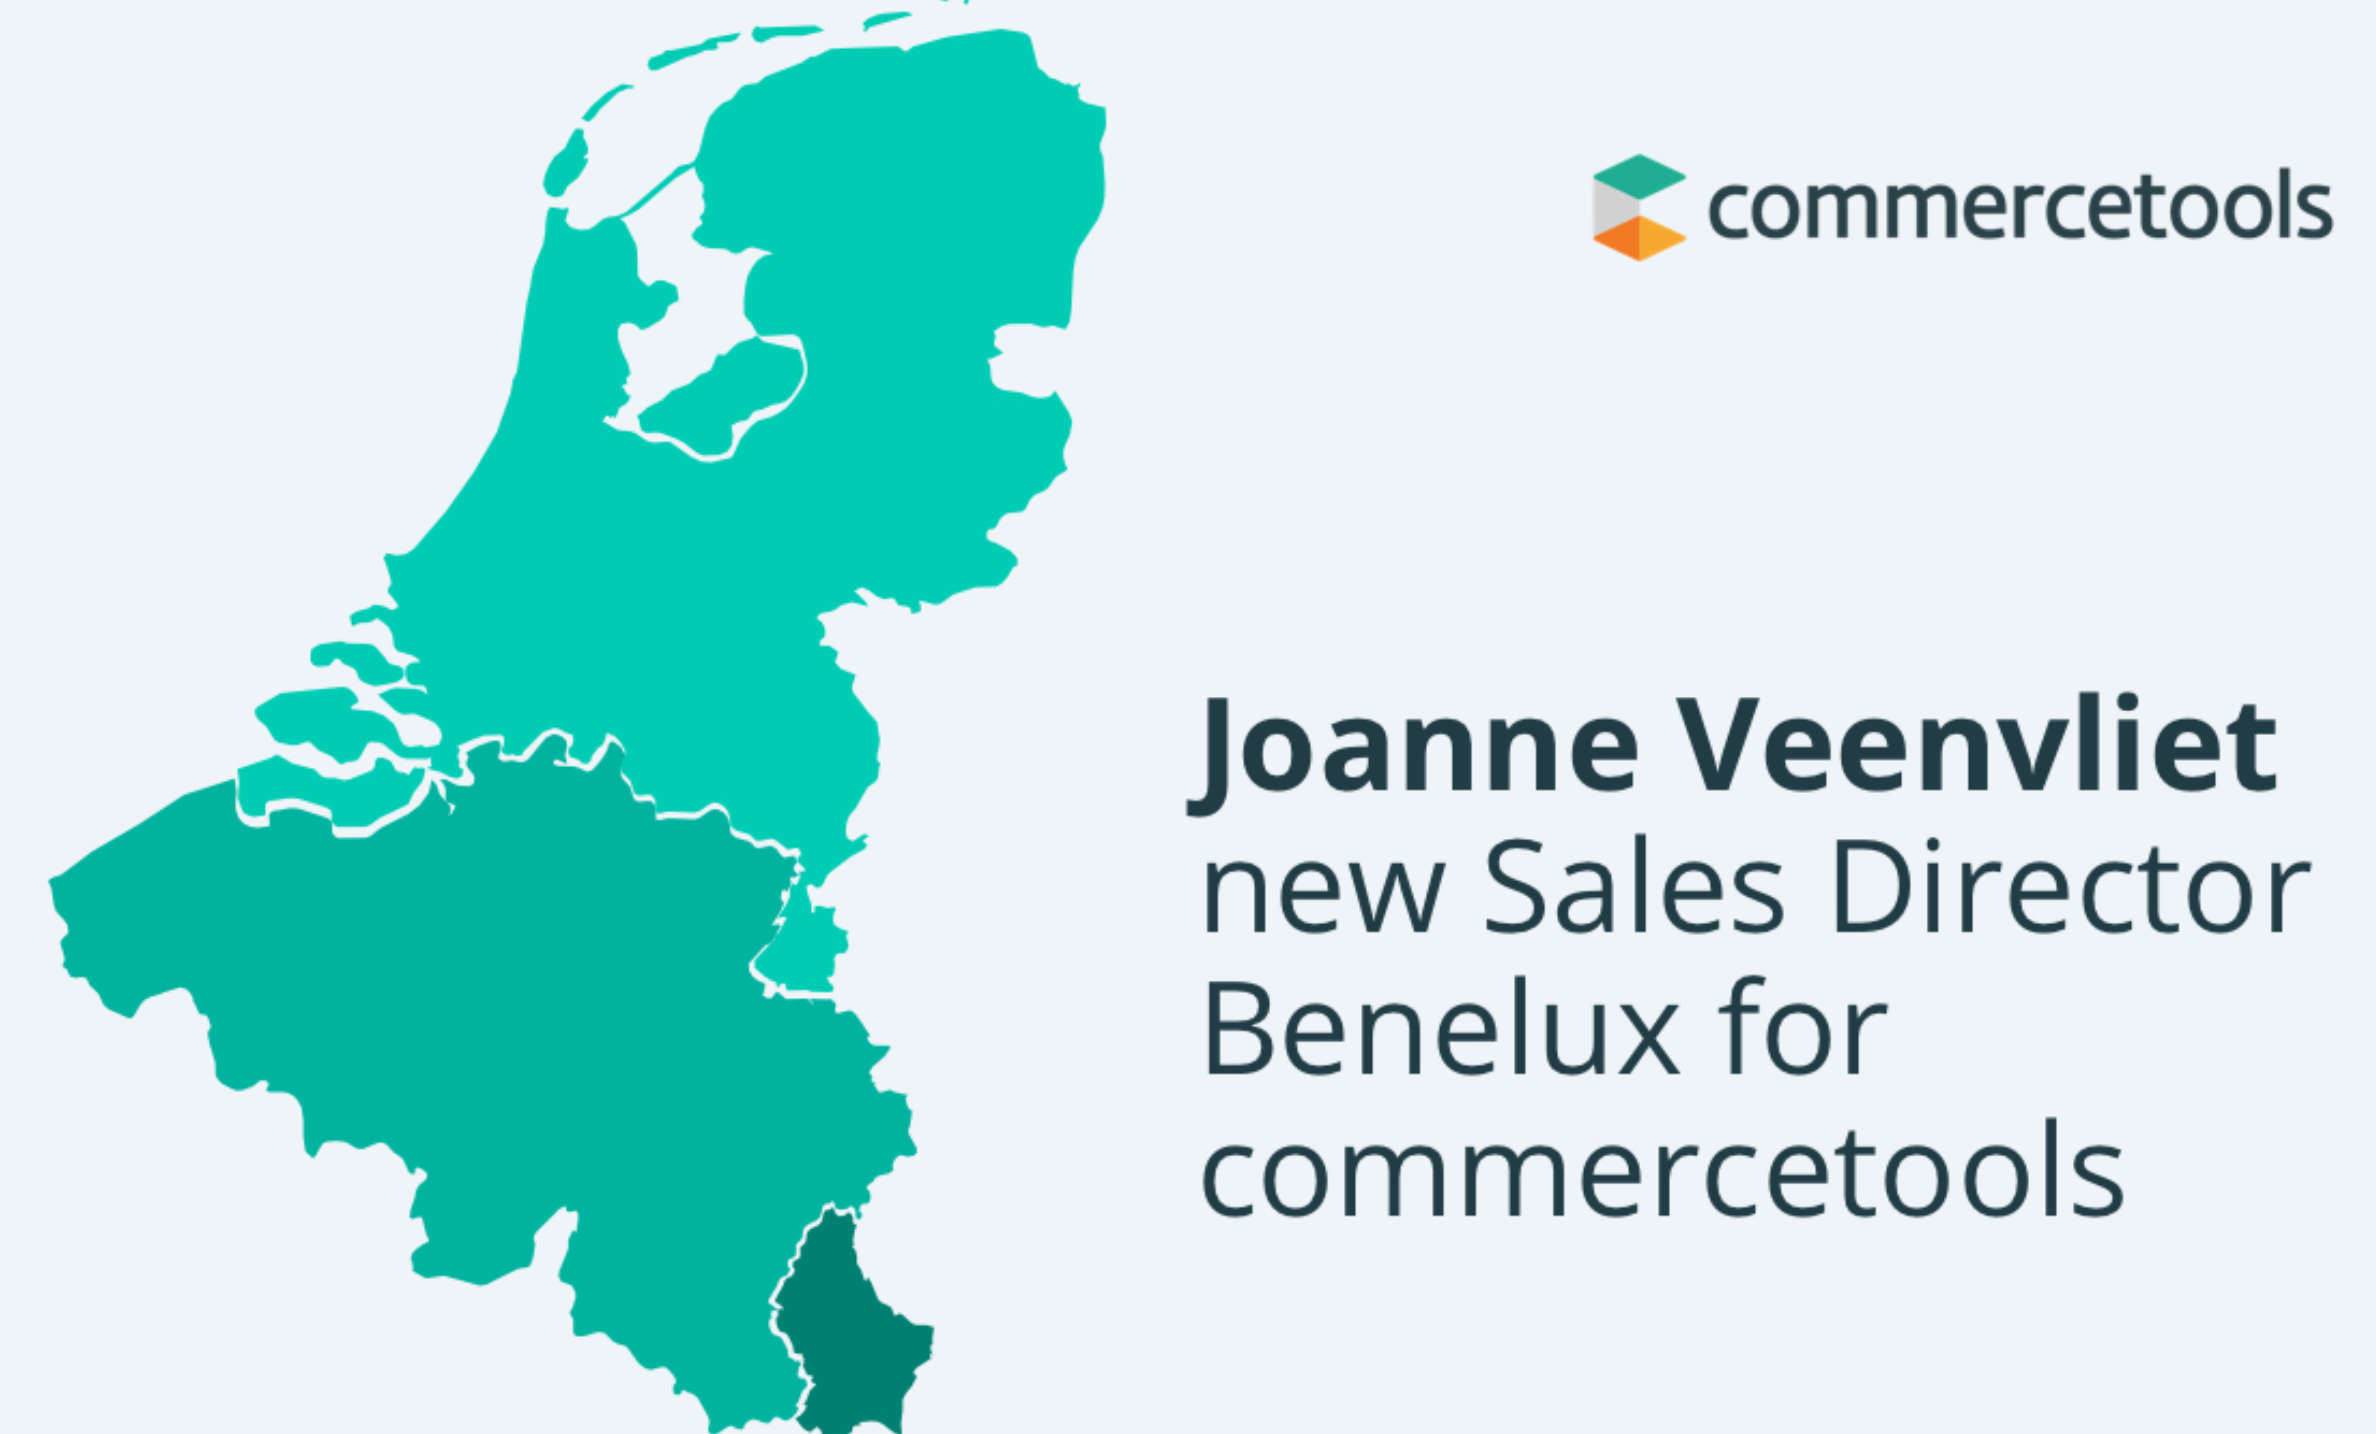 new Sales Director Benelux commercetools